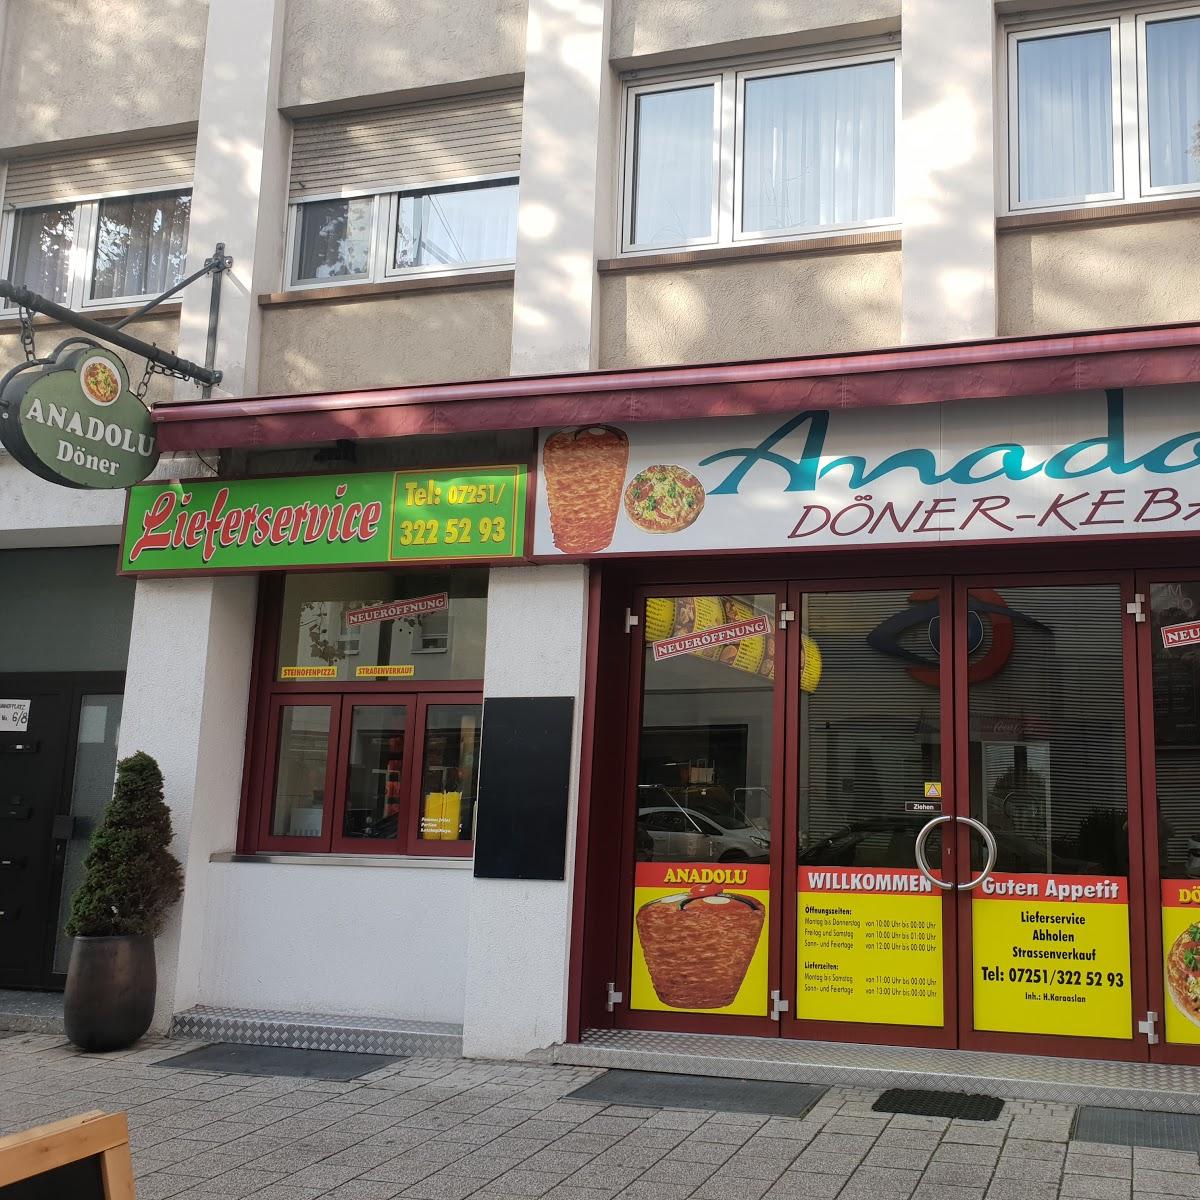 Restaurant "Anadolu Döner Pizza" in Bruchsal